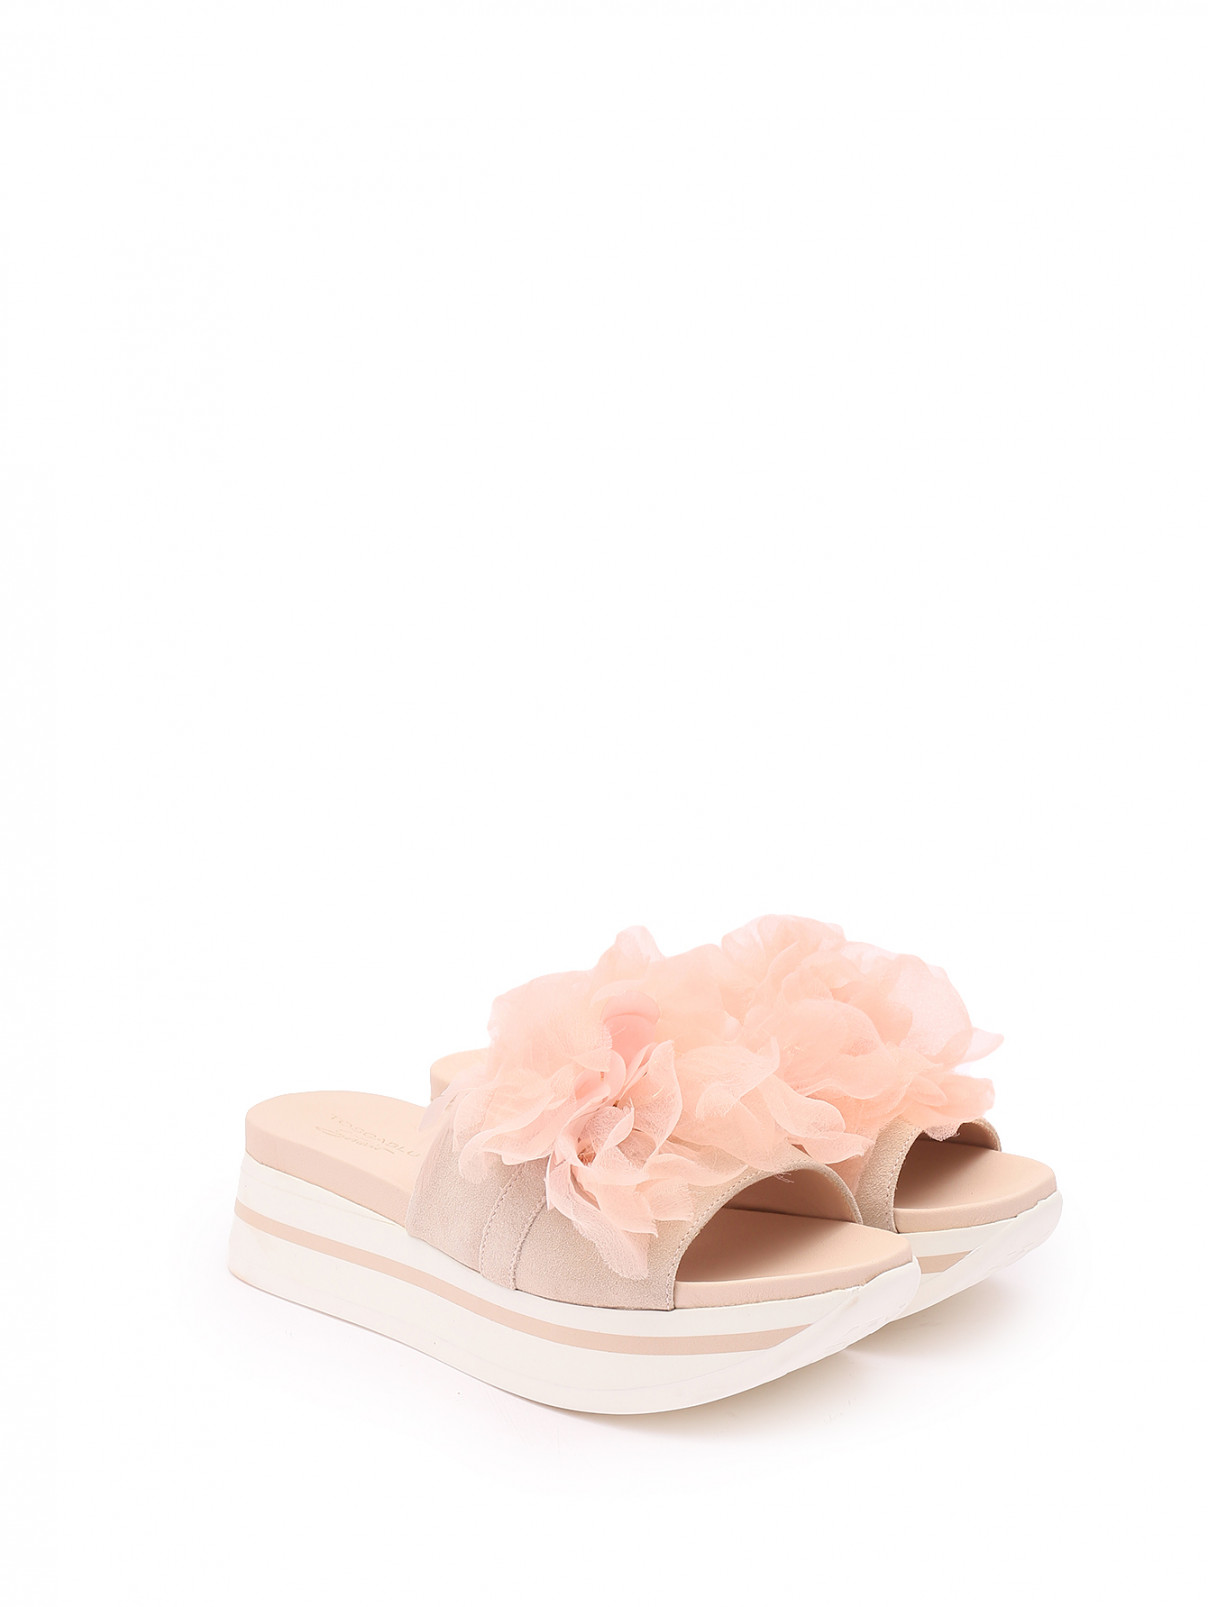 Шлепанцы из кожи с декором Tosca Blu Studio  –  Общий вид  – Цвет:  Розовый